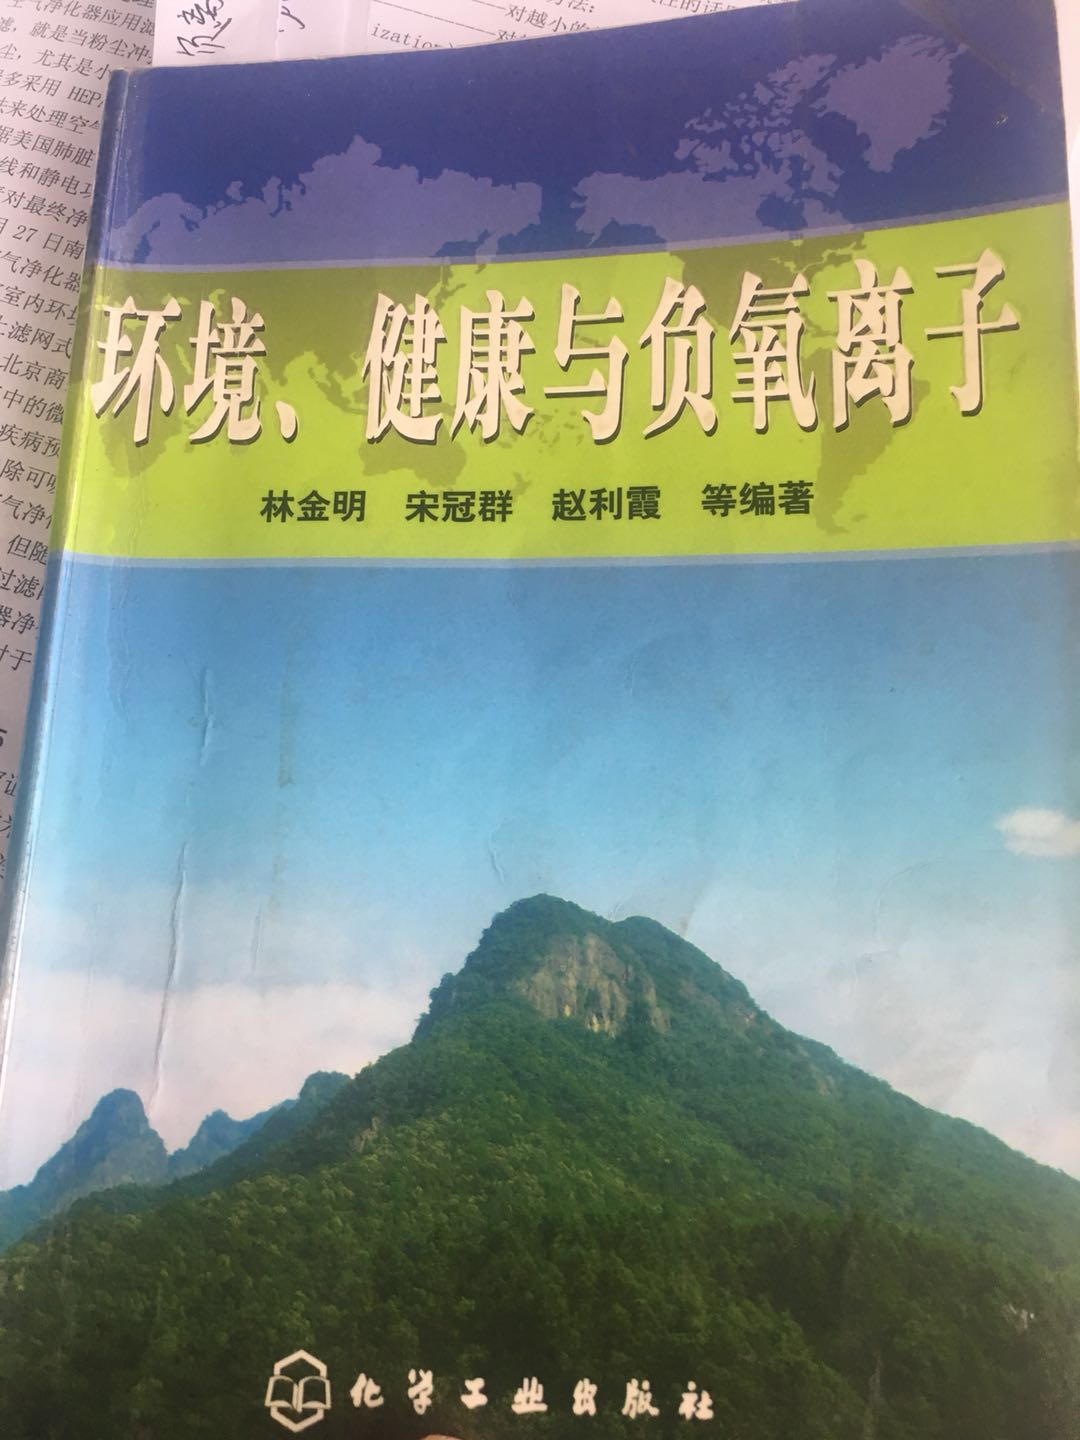 由化学工业出版社出版，清华大学博导林金明教授等人主编的图书《环境、健康与负氧离子》